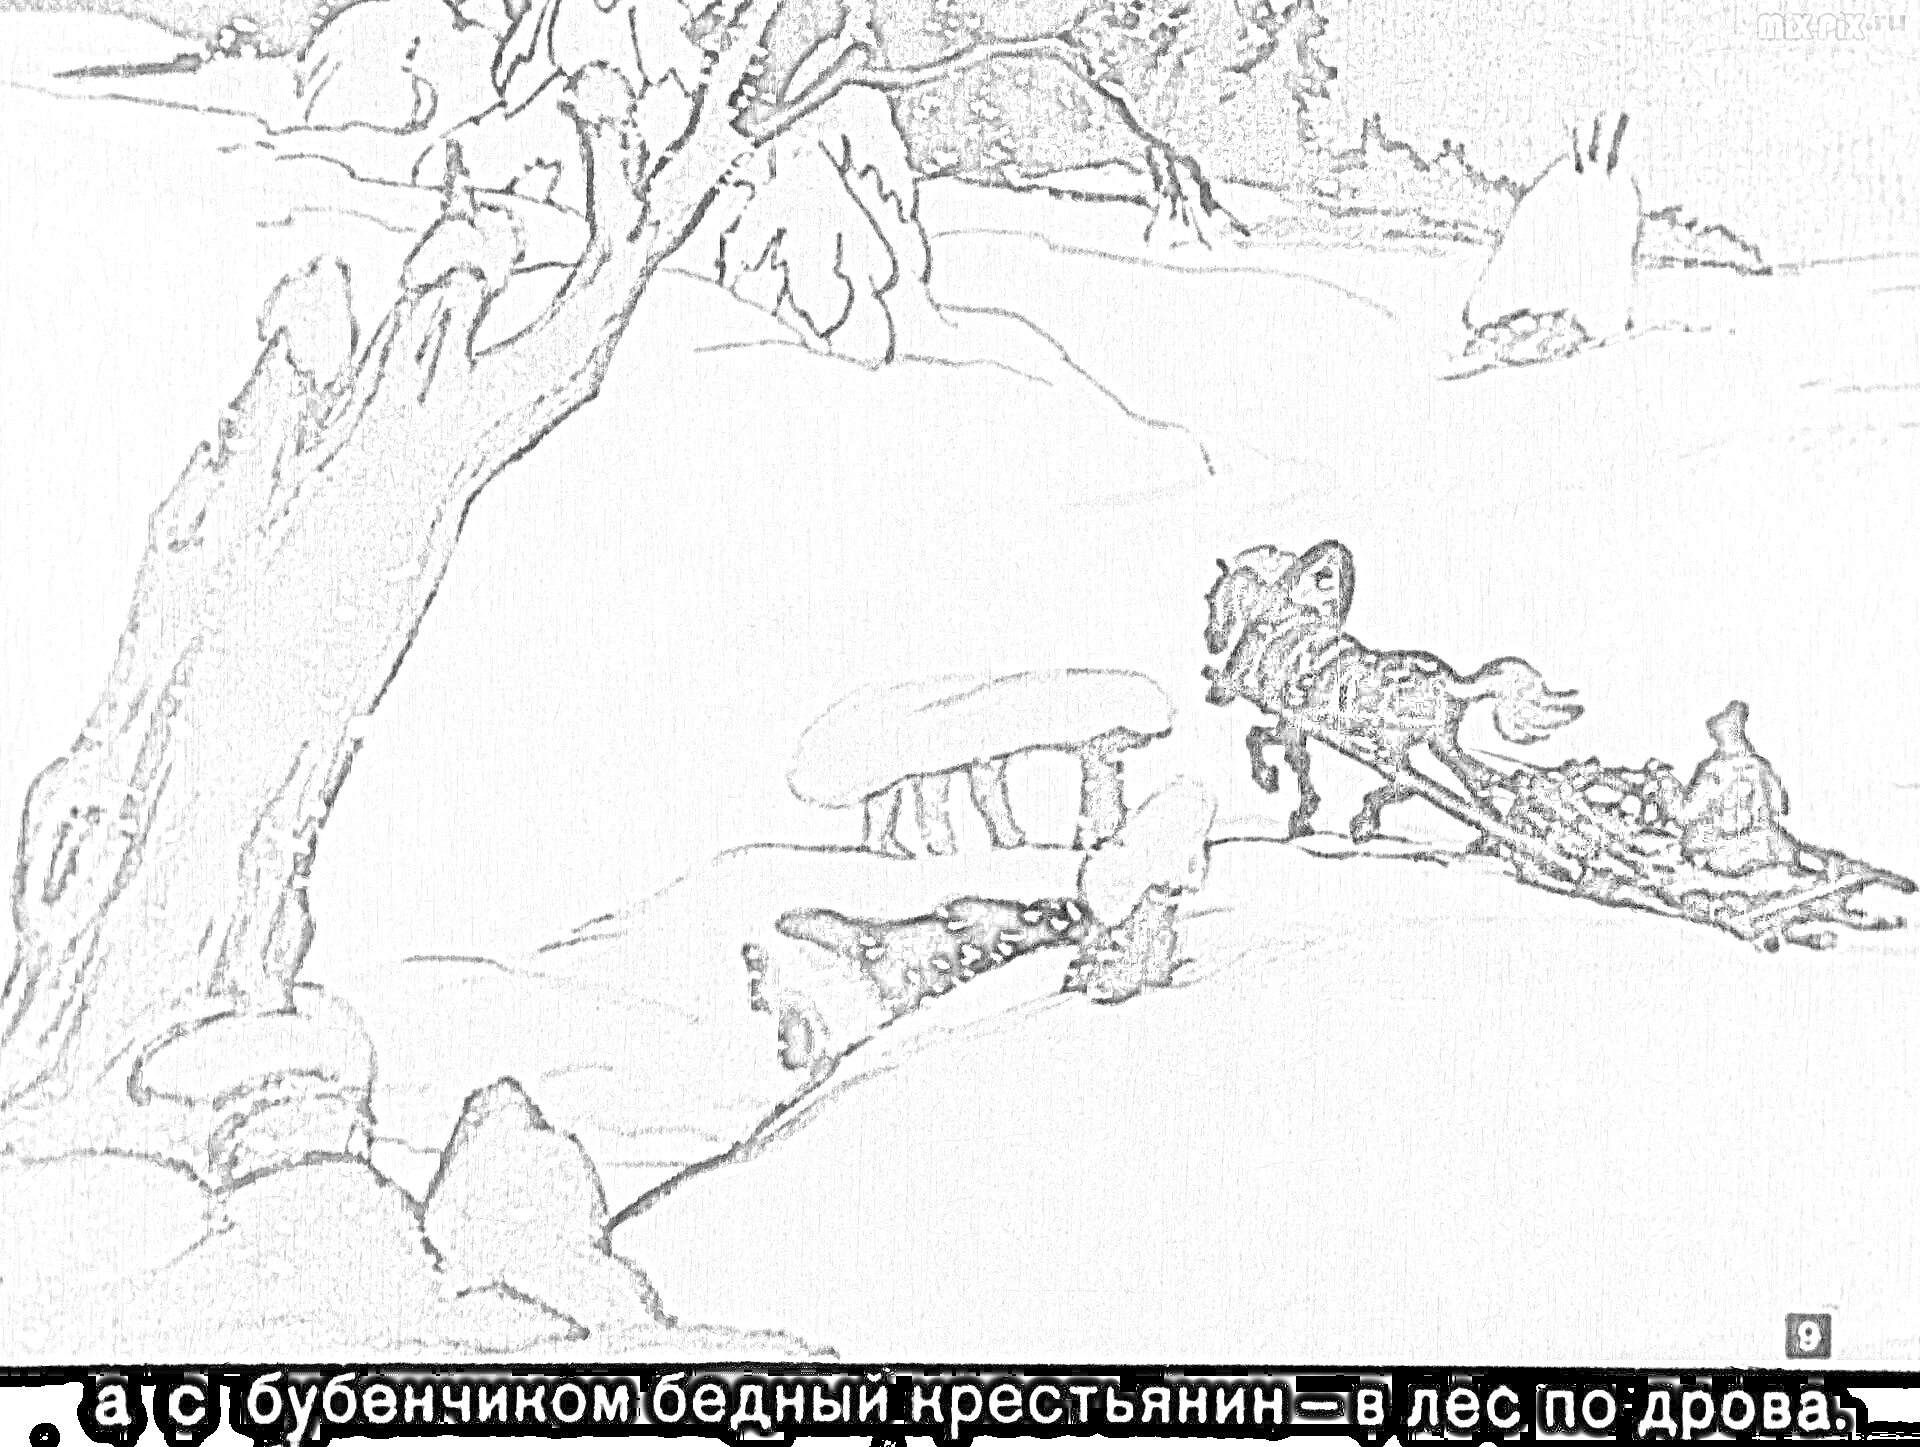 Раскраска Лесная зимняя сцена со снопом сена, деревом, крестьянским санным экипажем с лошадью и человеком на заднем плане.